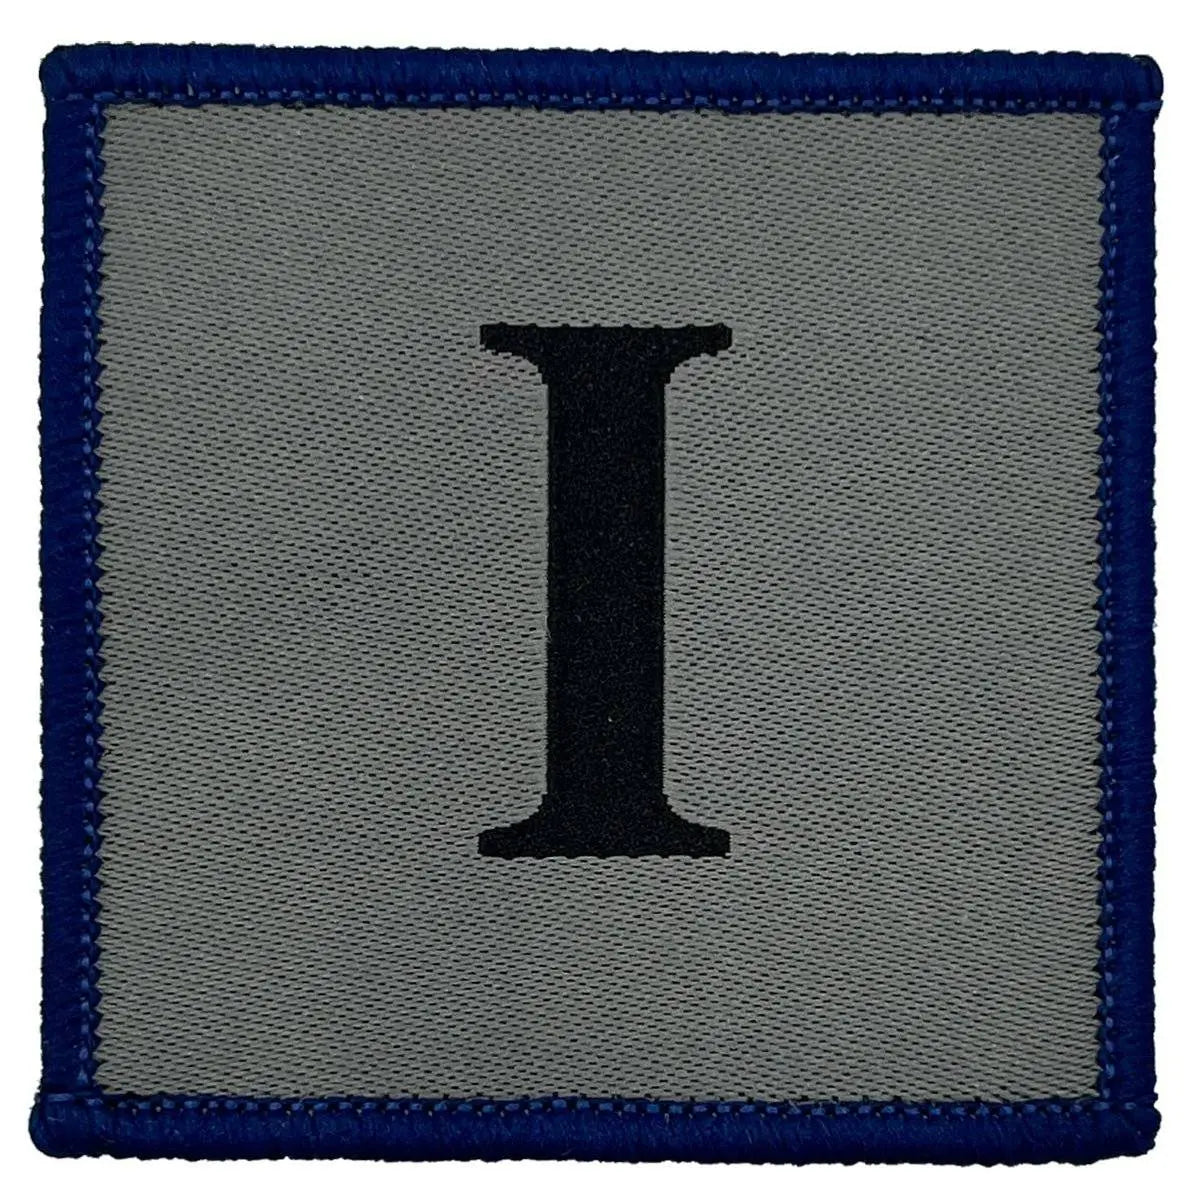 Ranger Regiment I TRF Iron On Badge with Blue Border - John Bull Clothing